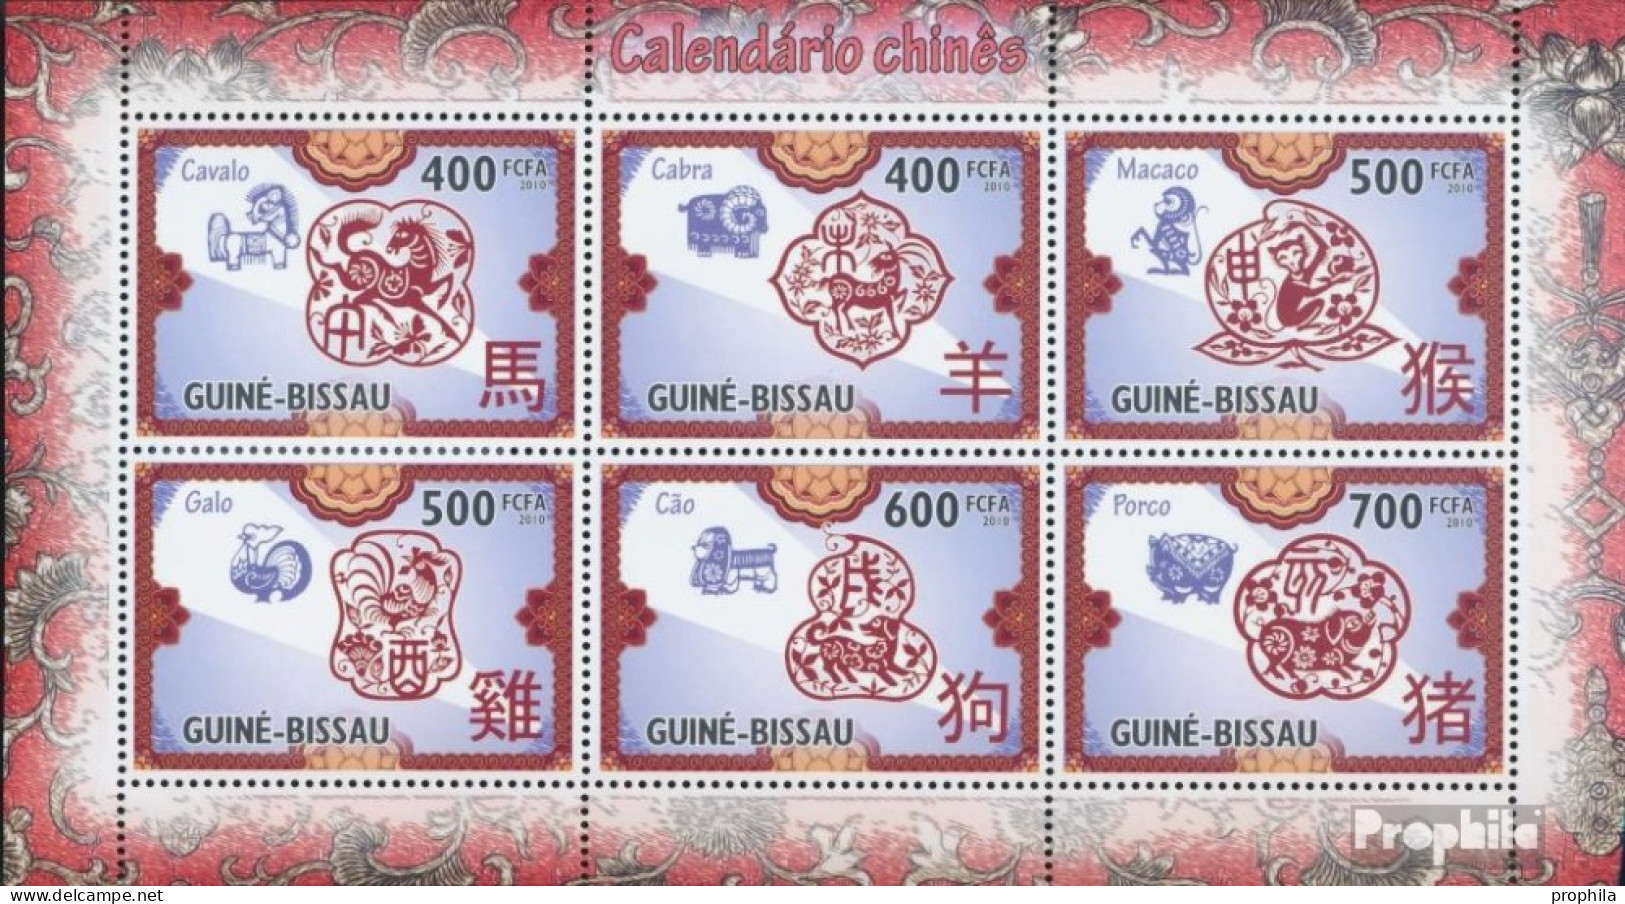 Guinea-Bissau 4779-4784 Kleinbogen (kompl. Ausgabe) Postfrisch 2010 Chinesischer Kalender - Guinea-Bissau